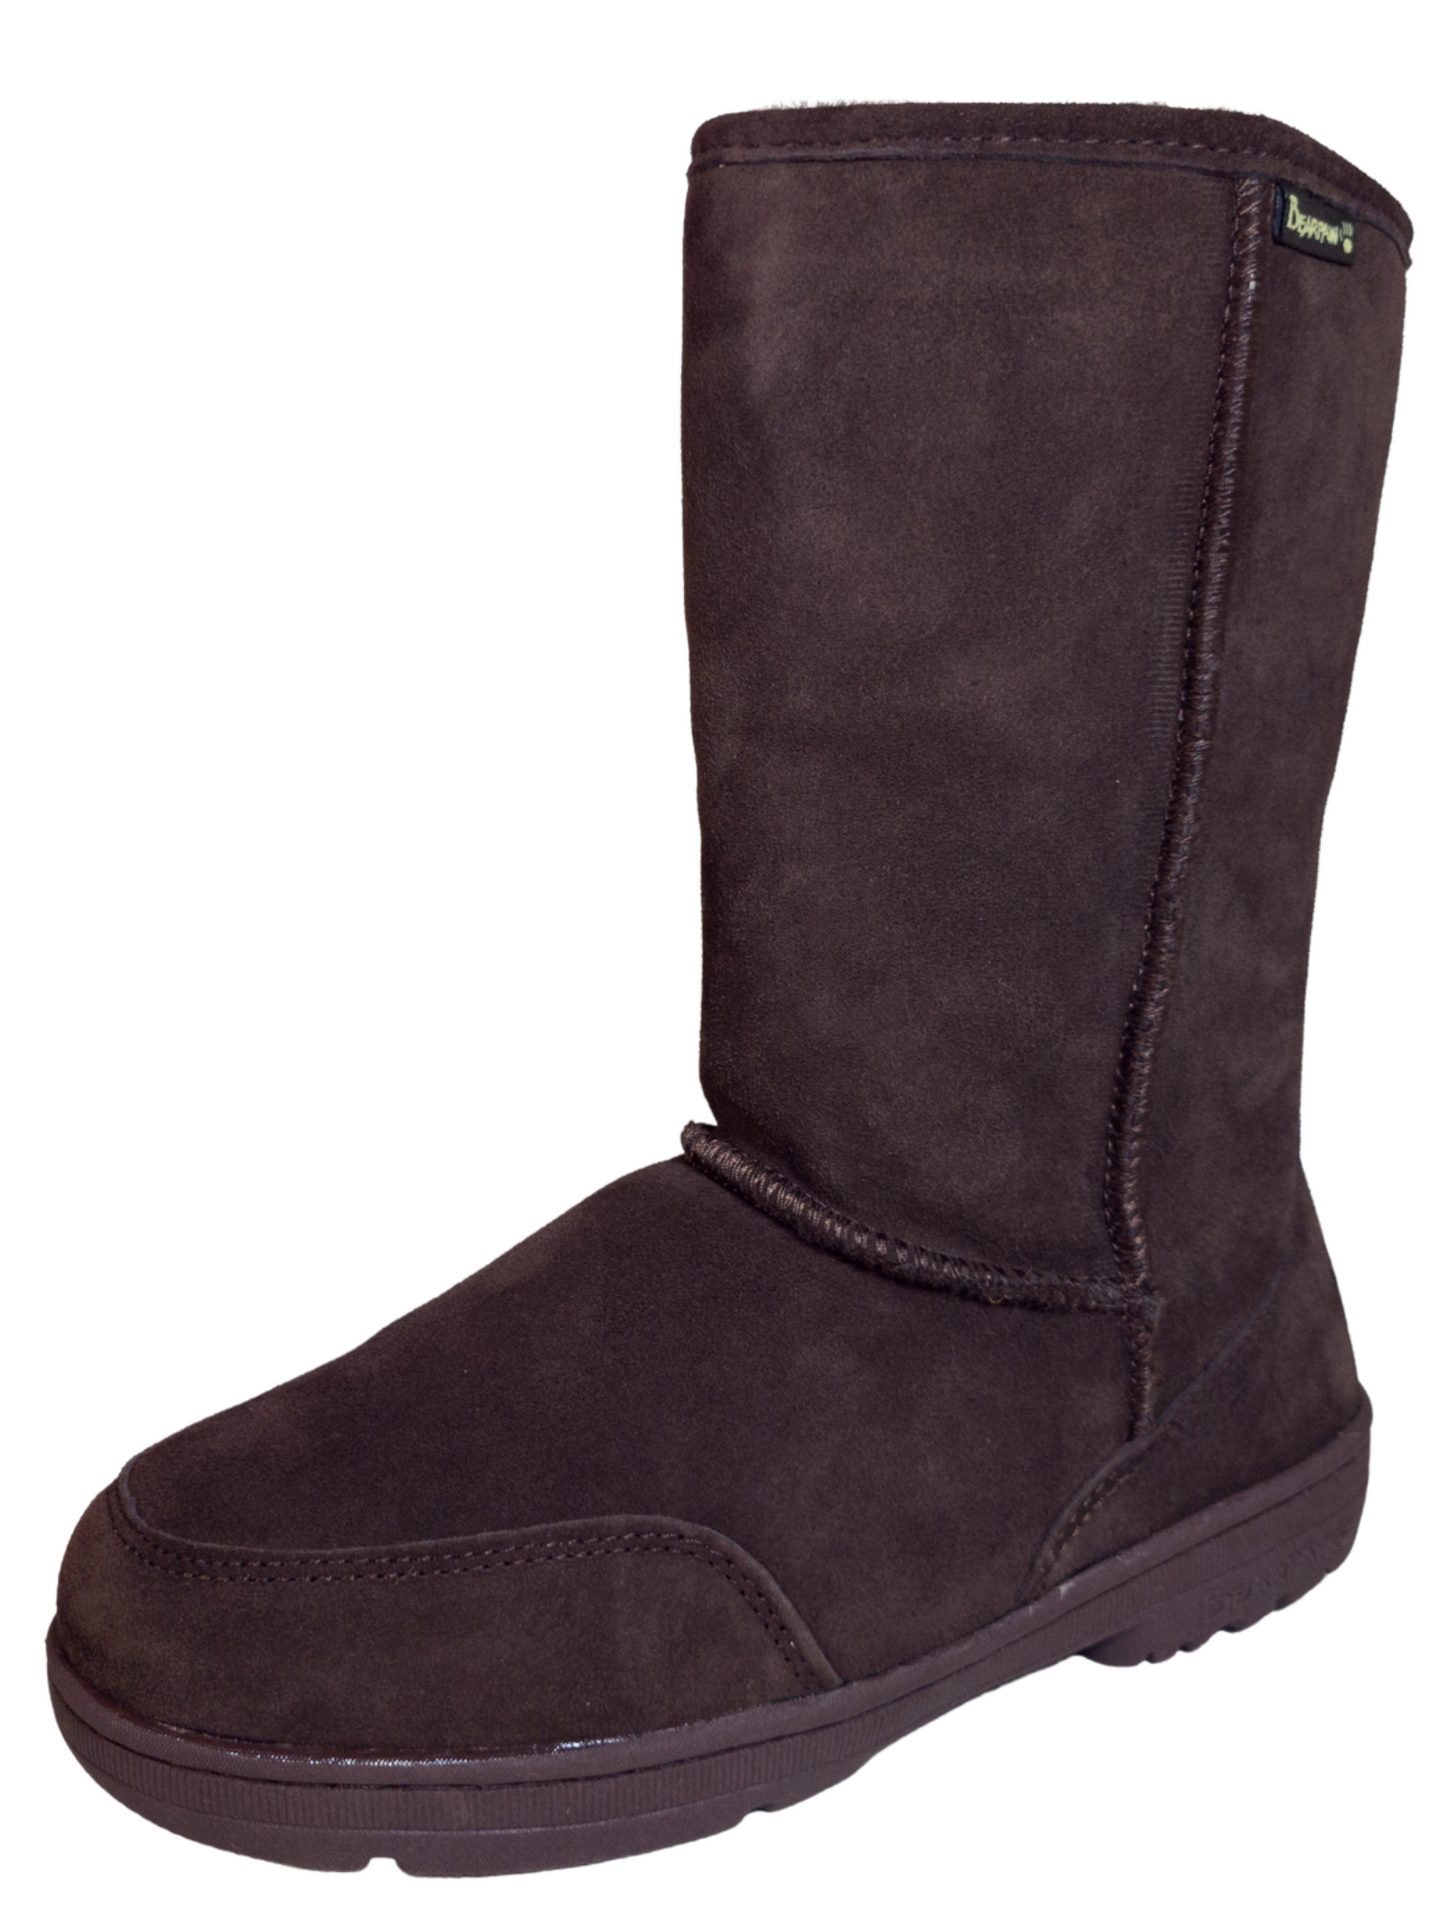 Botas de Invierno Casuales de Piel Gamuza para Mujer 'Bearpaw' - ID: 7123 Winter Boots Bearpaw Choco